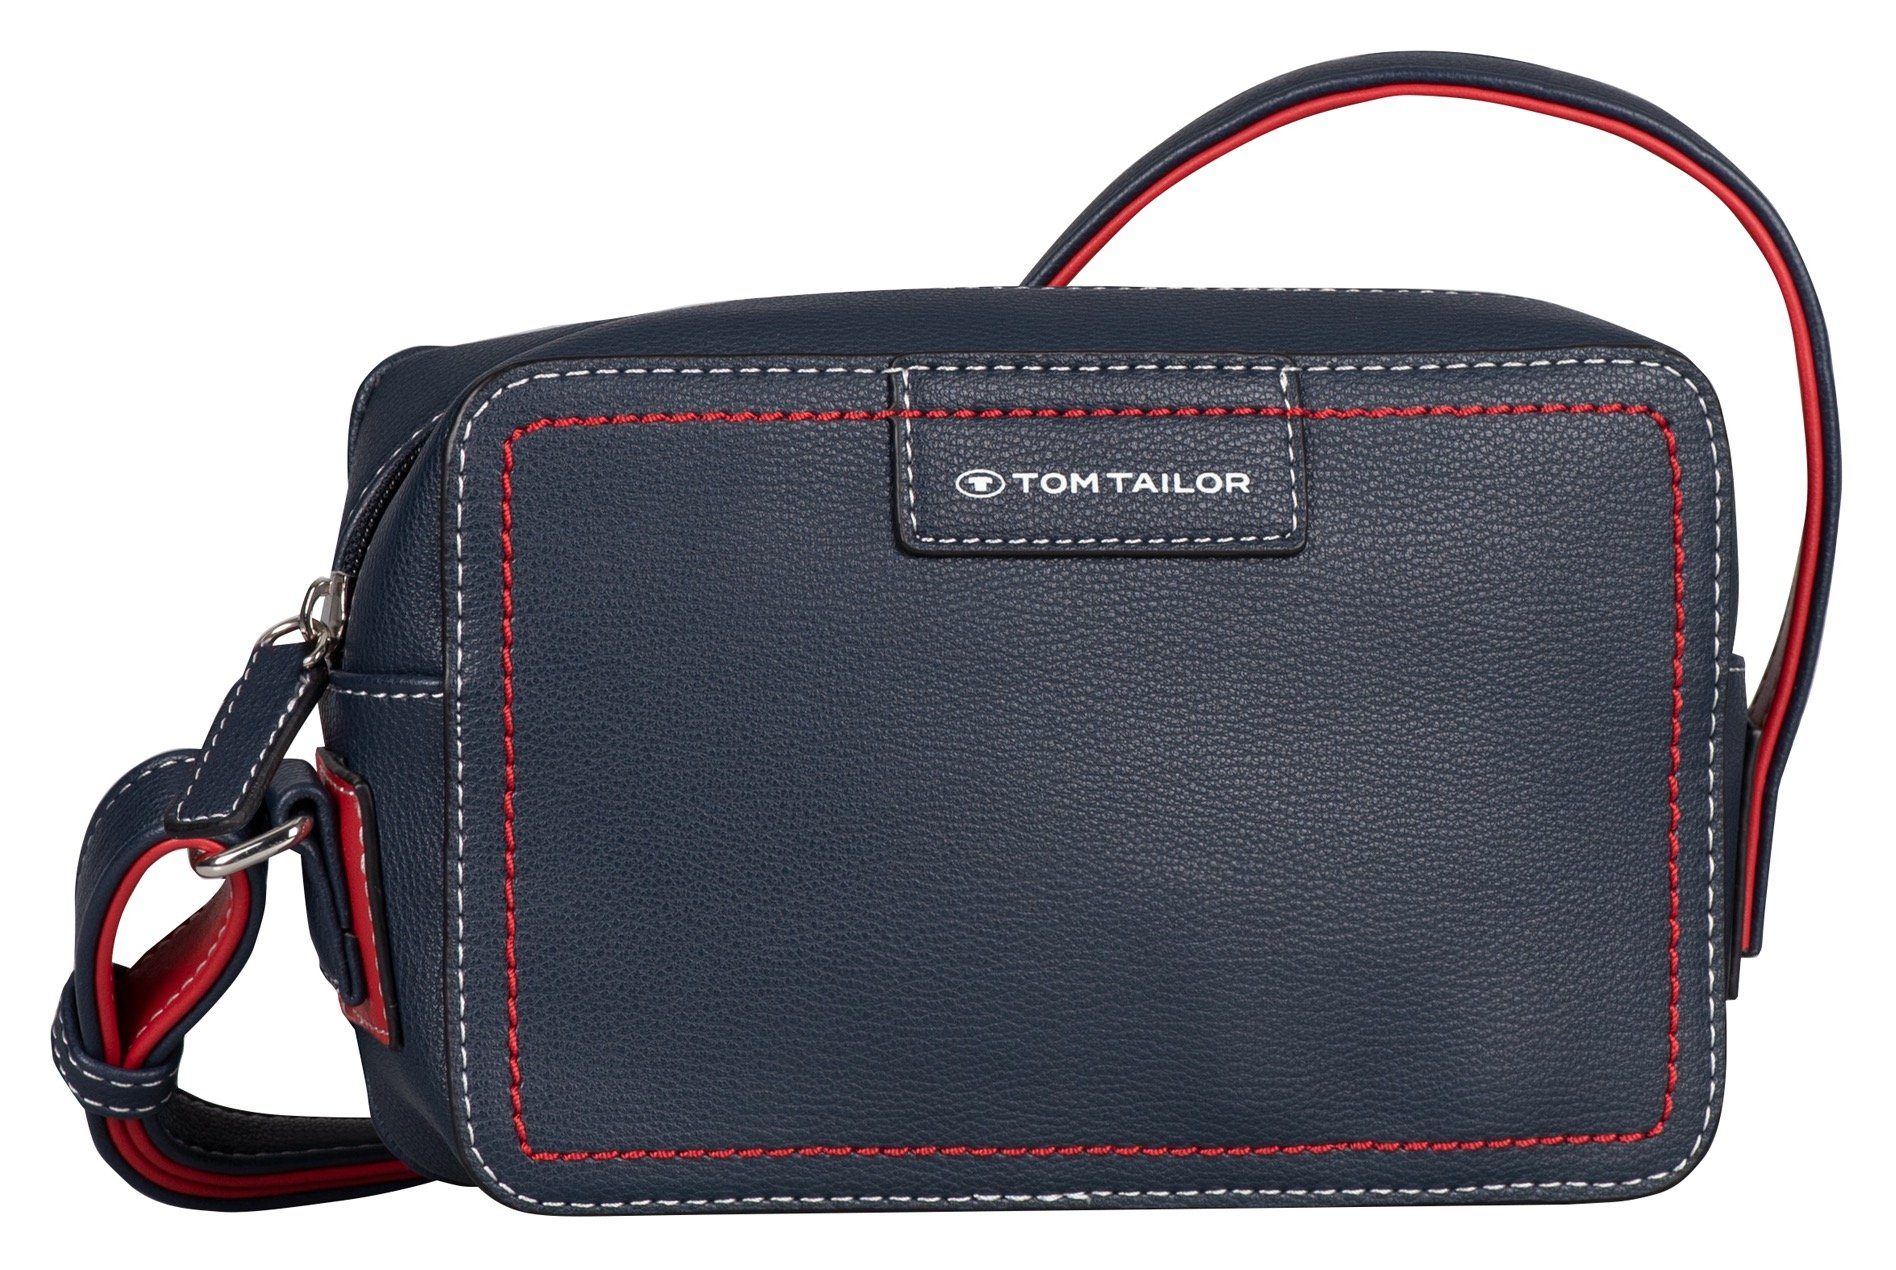 TOM TAILOR Handtasche Miri mare, maritimer Stil mit Kontrastnähten und durchdachten Farbakzenten